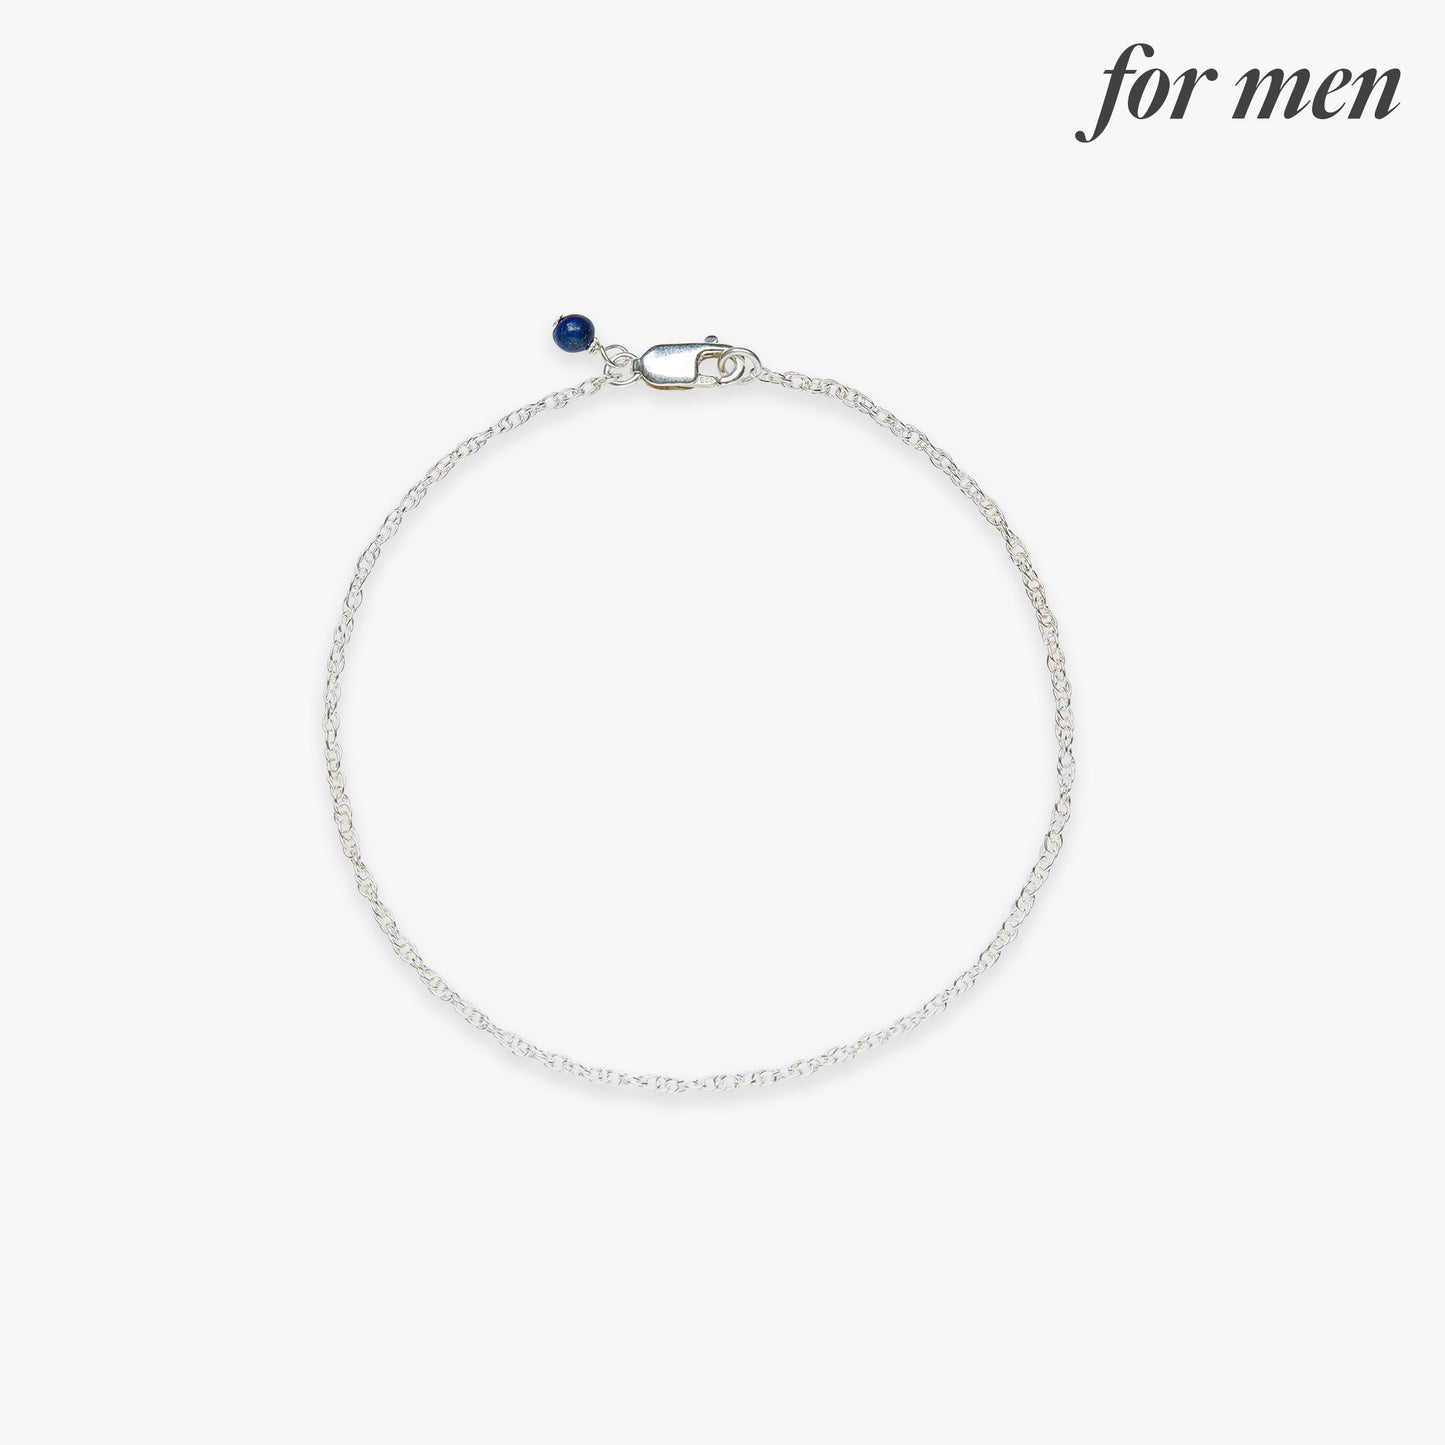 Twist chain bracelet silver for men